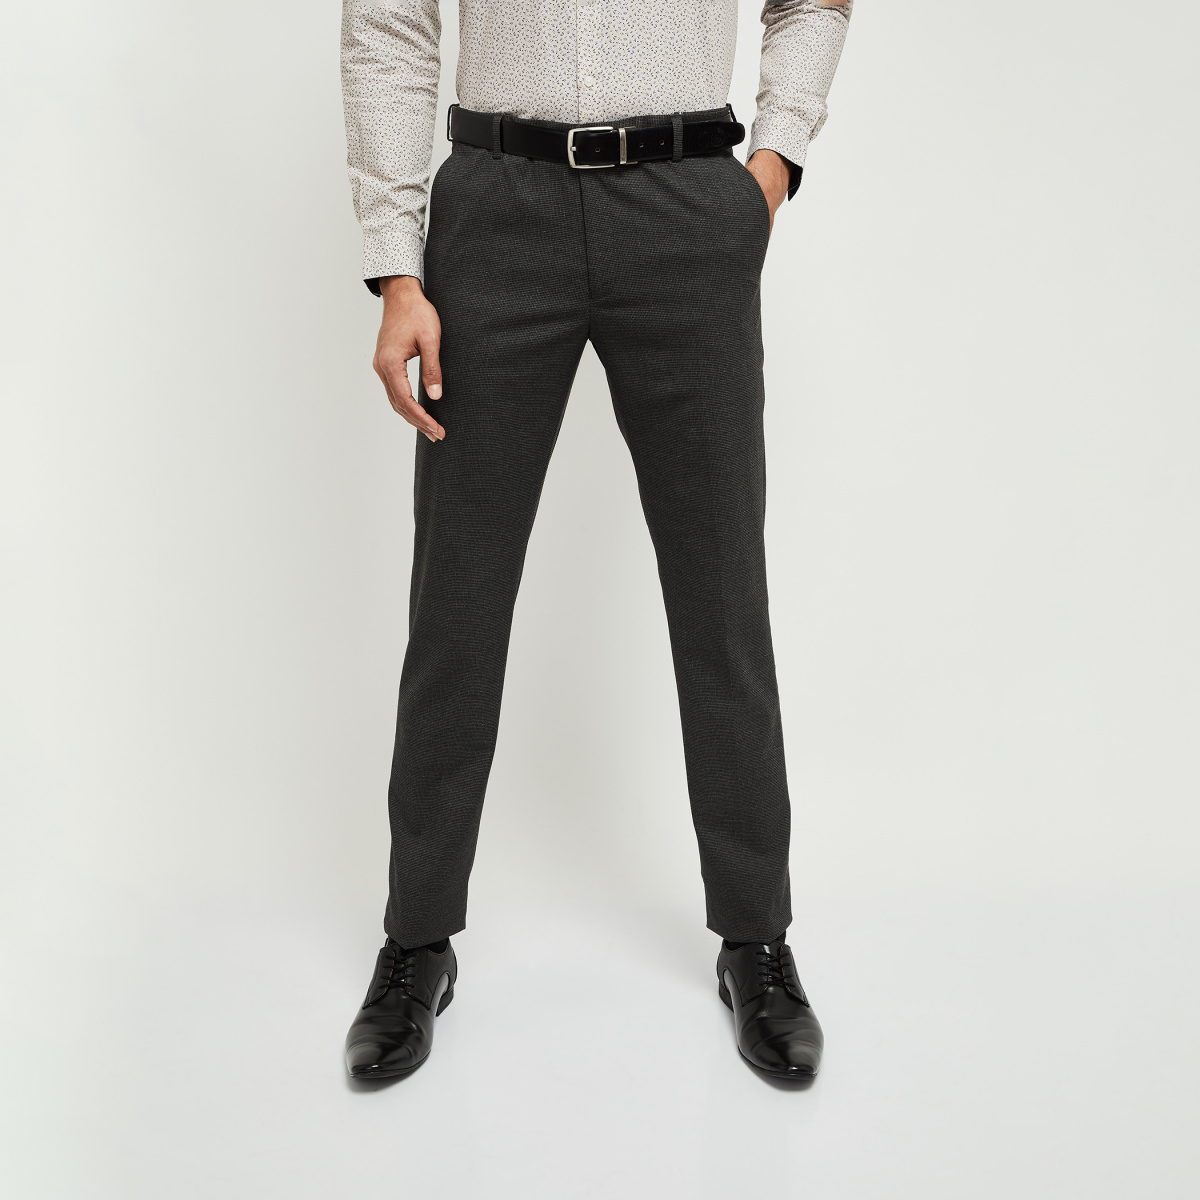 MAX Regular Fit Men Grey Trousers - Buy MAX Regular Fit Men Grey Trousers  Online at Best Prices in India | Flipkart.com